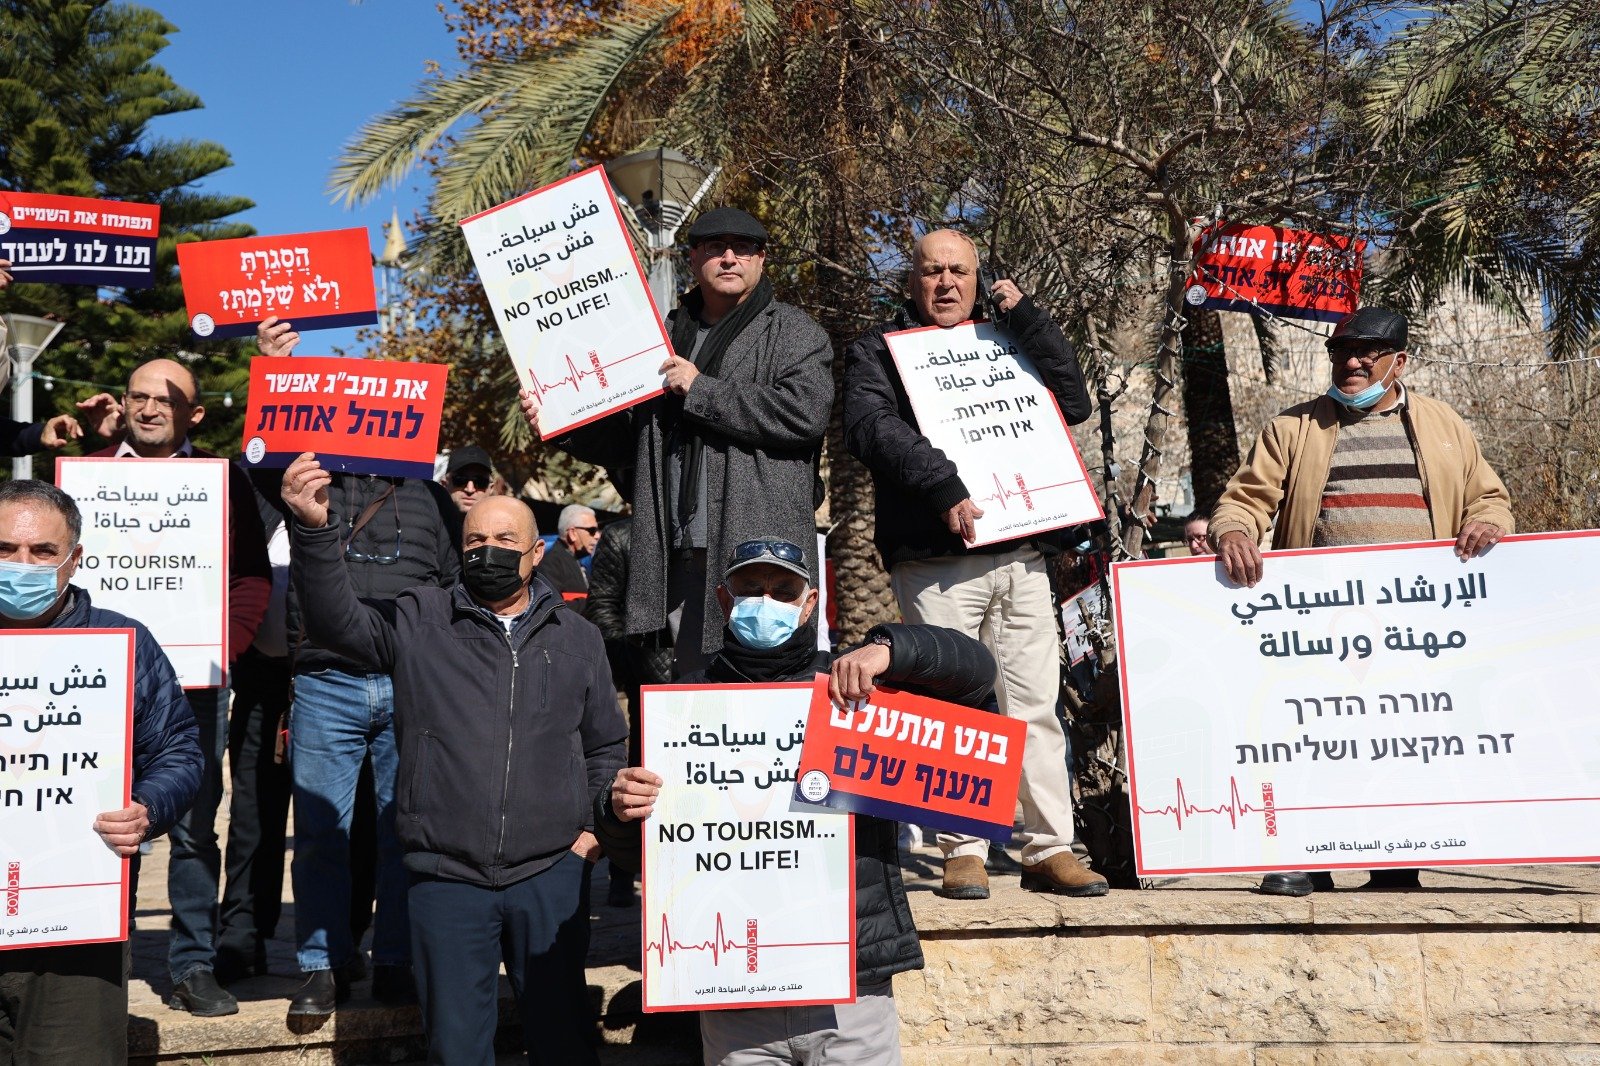 أزمة السياحة بسبب تقييدات الكورونا  - تظاهرة غاضبة في الناصرة-3